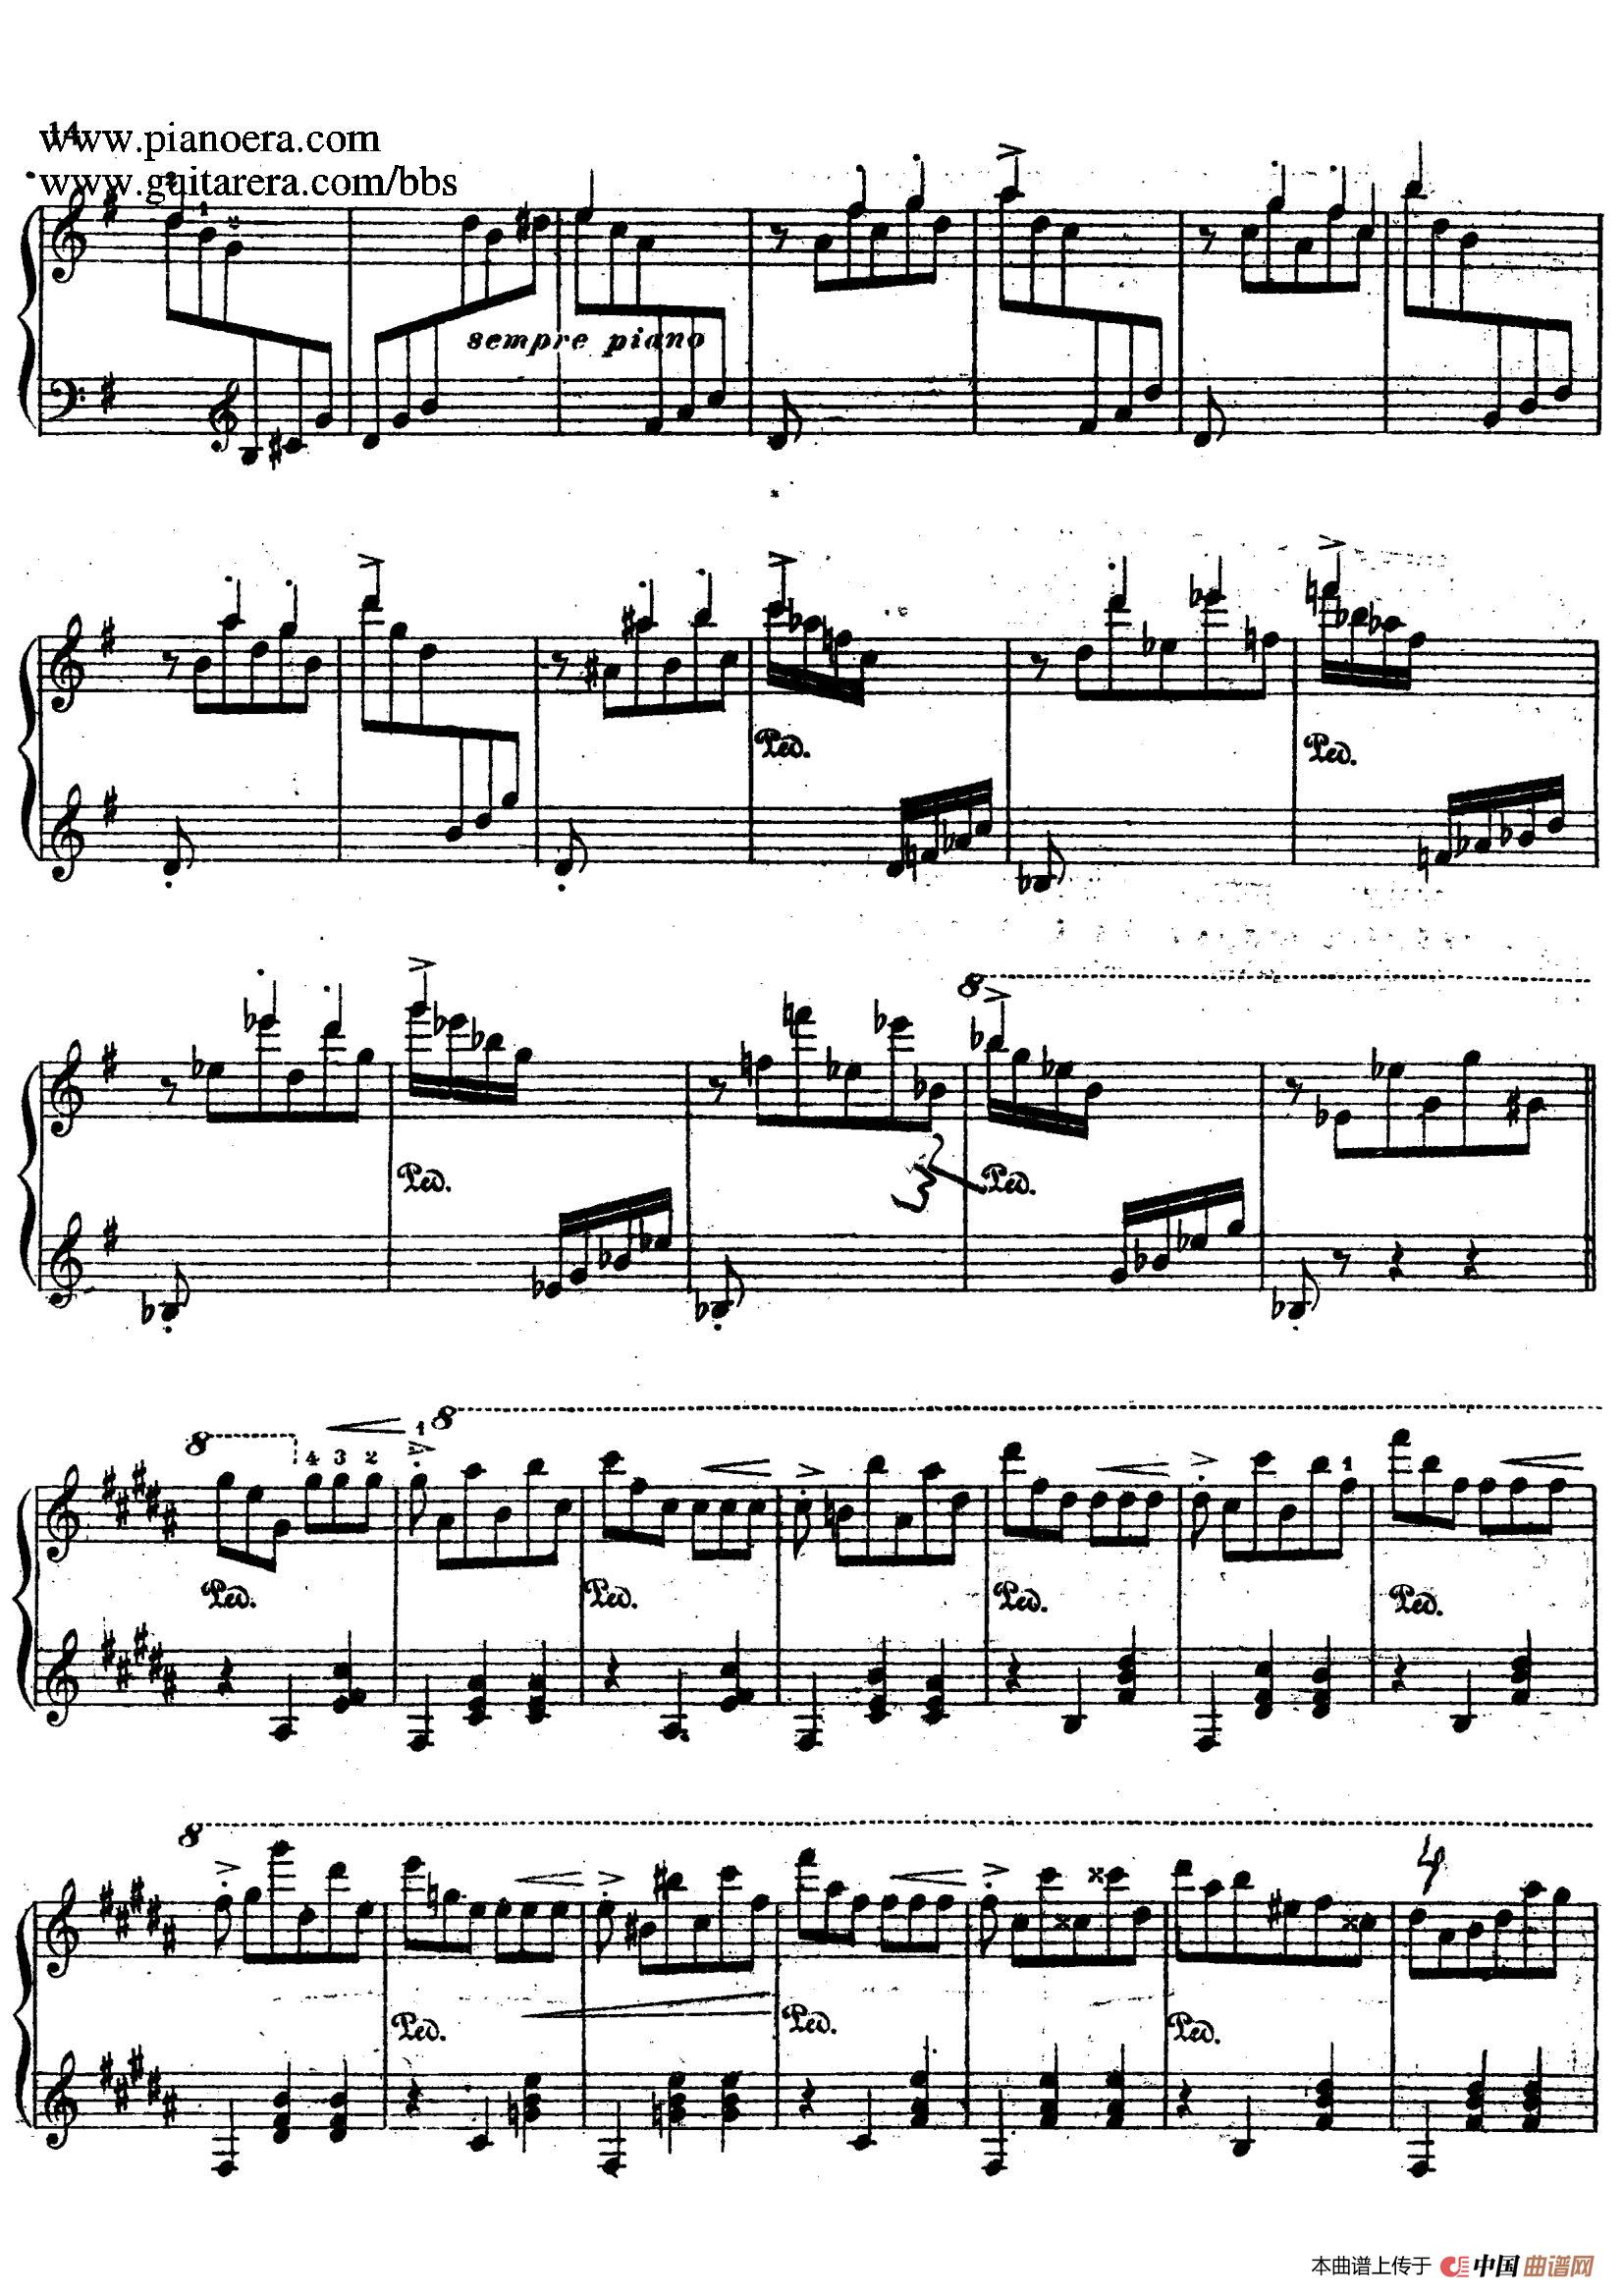 《浮士德圆舞曲 Faust Valse》钢琴曲谱图分享